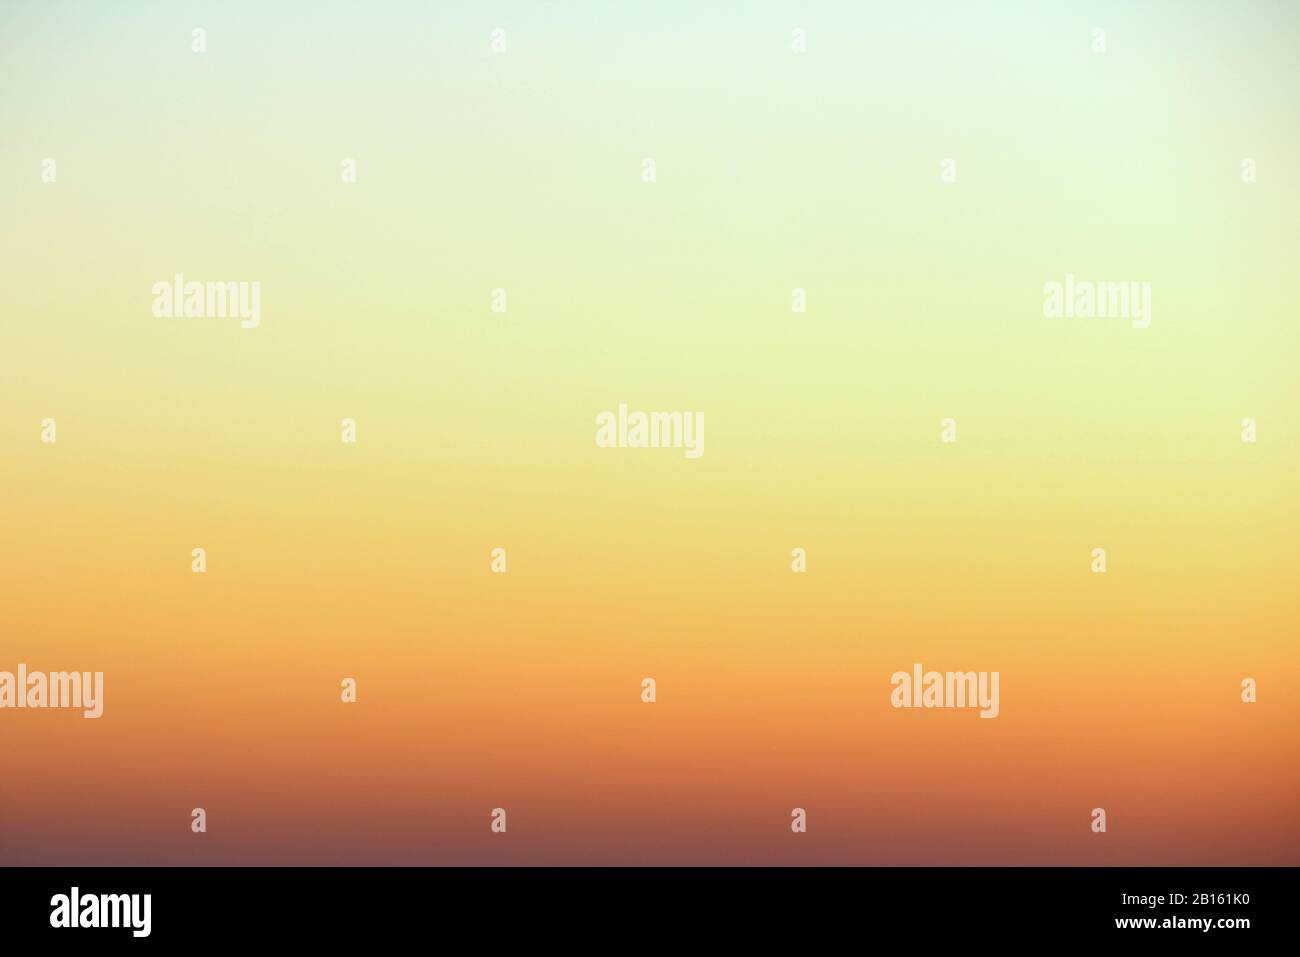 Flammender Himmel über dem Horizont bei Sonnenuntergang oder Sonnenaufgang. Leuchtend schillernde Farben von Gelb, Orange und Rot. Farbiger Hintergrund für Text und Design. Stockfoto